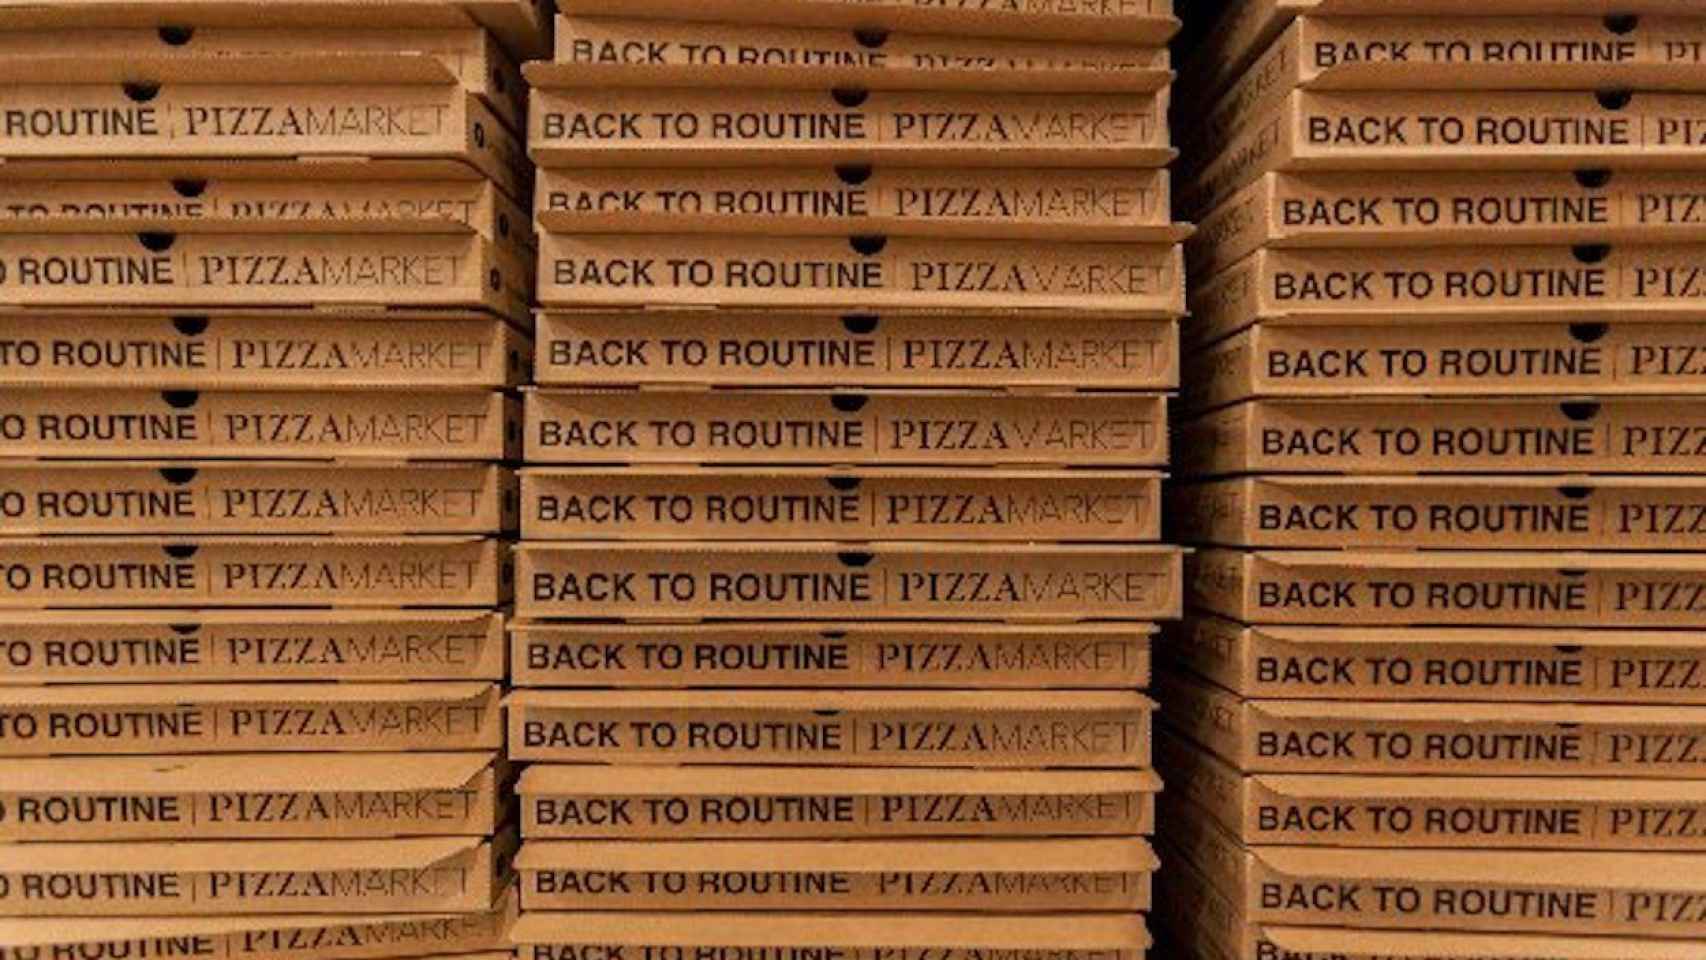 Imagen de unas cajas de pizza de 'delivery' de Pizza Market / TRIPADVISOR